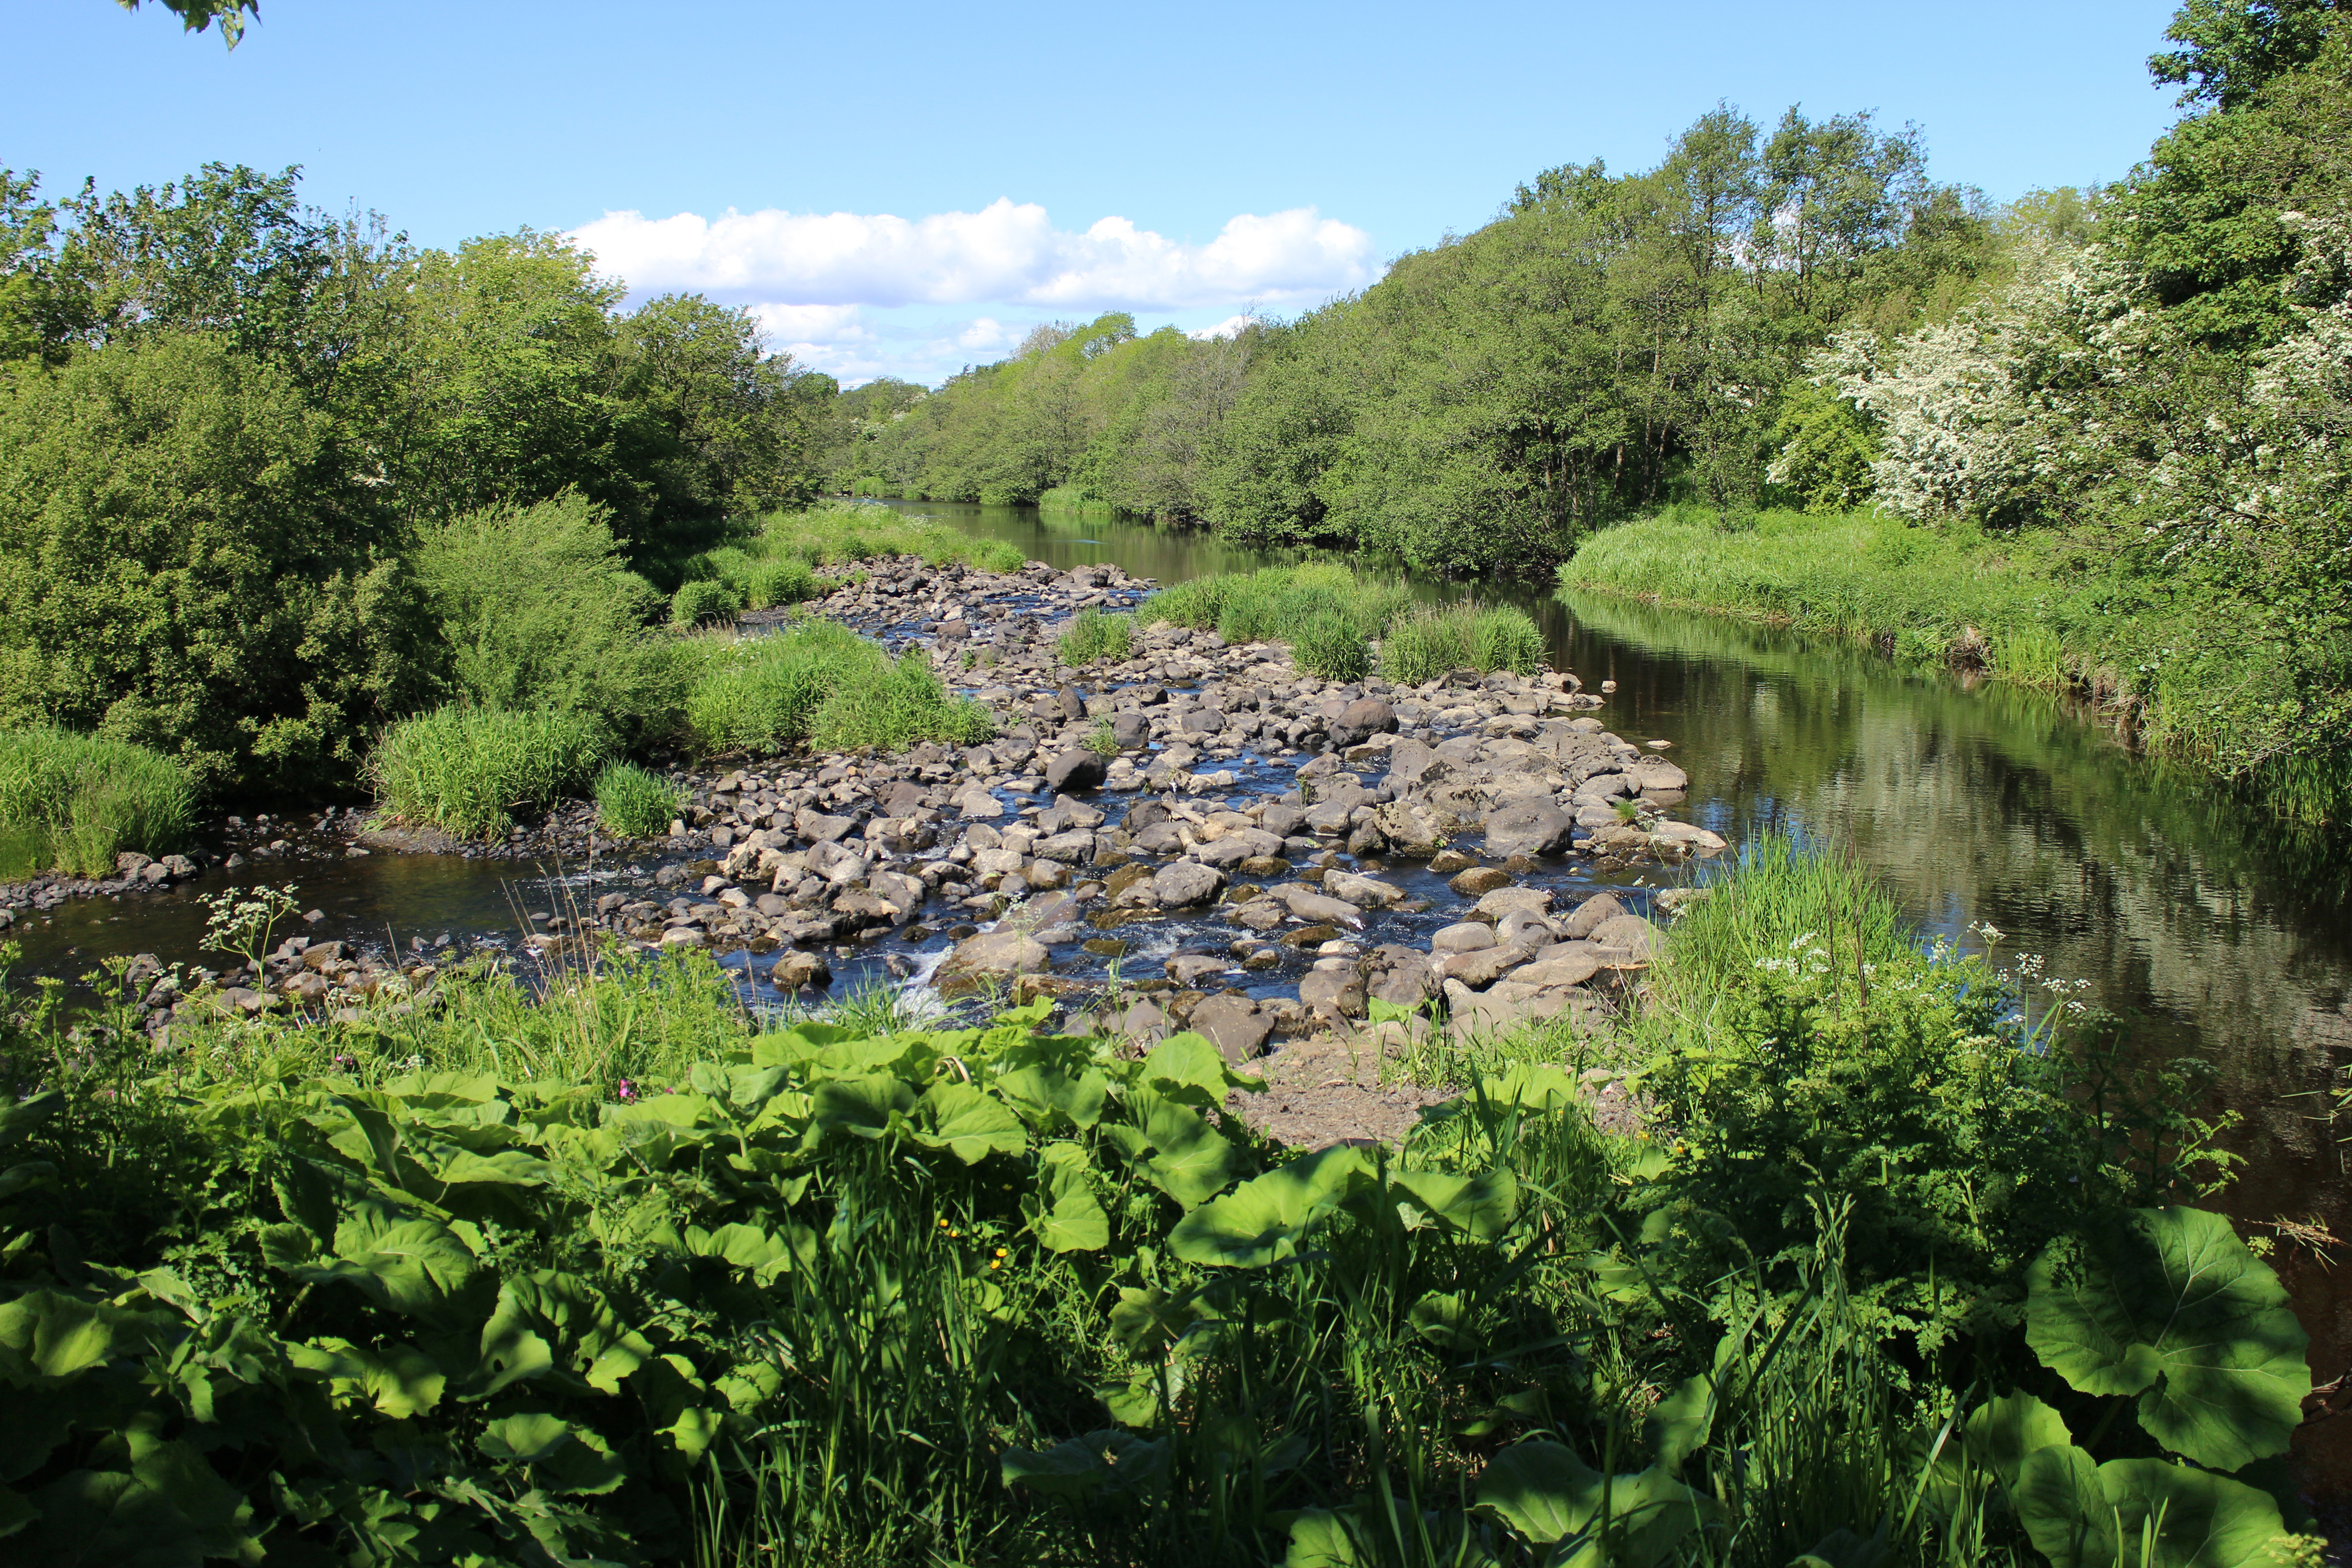 River garnock at dalgarven mill